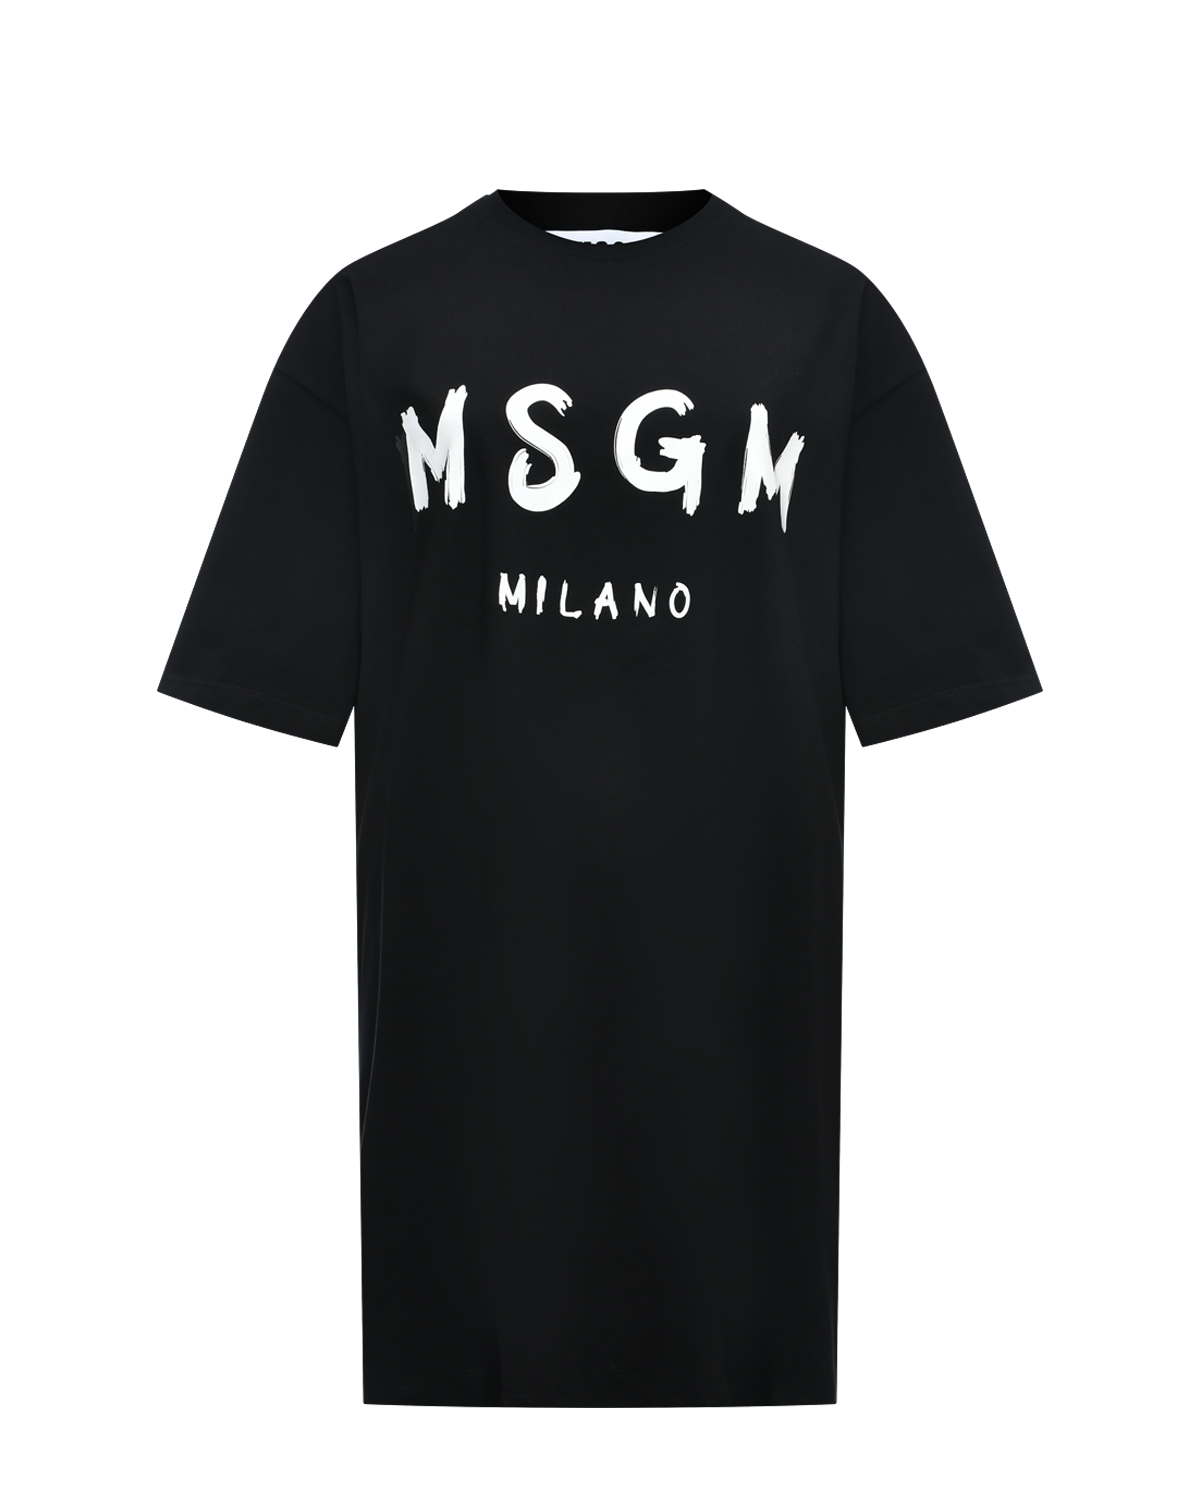 Платье-футболка с белым лого, черная MSGM футболка со сплошным разноцветным лого dolce